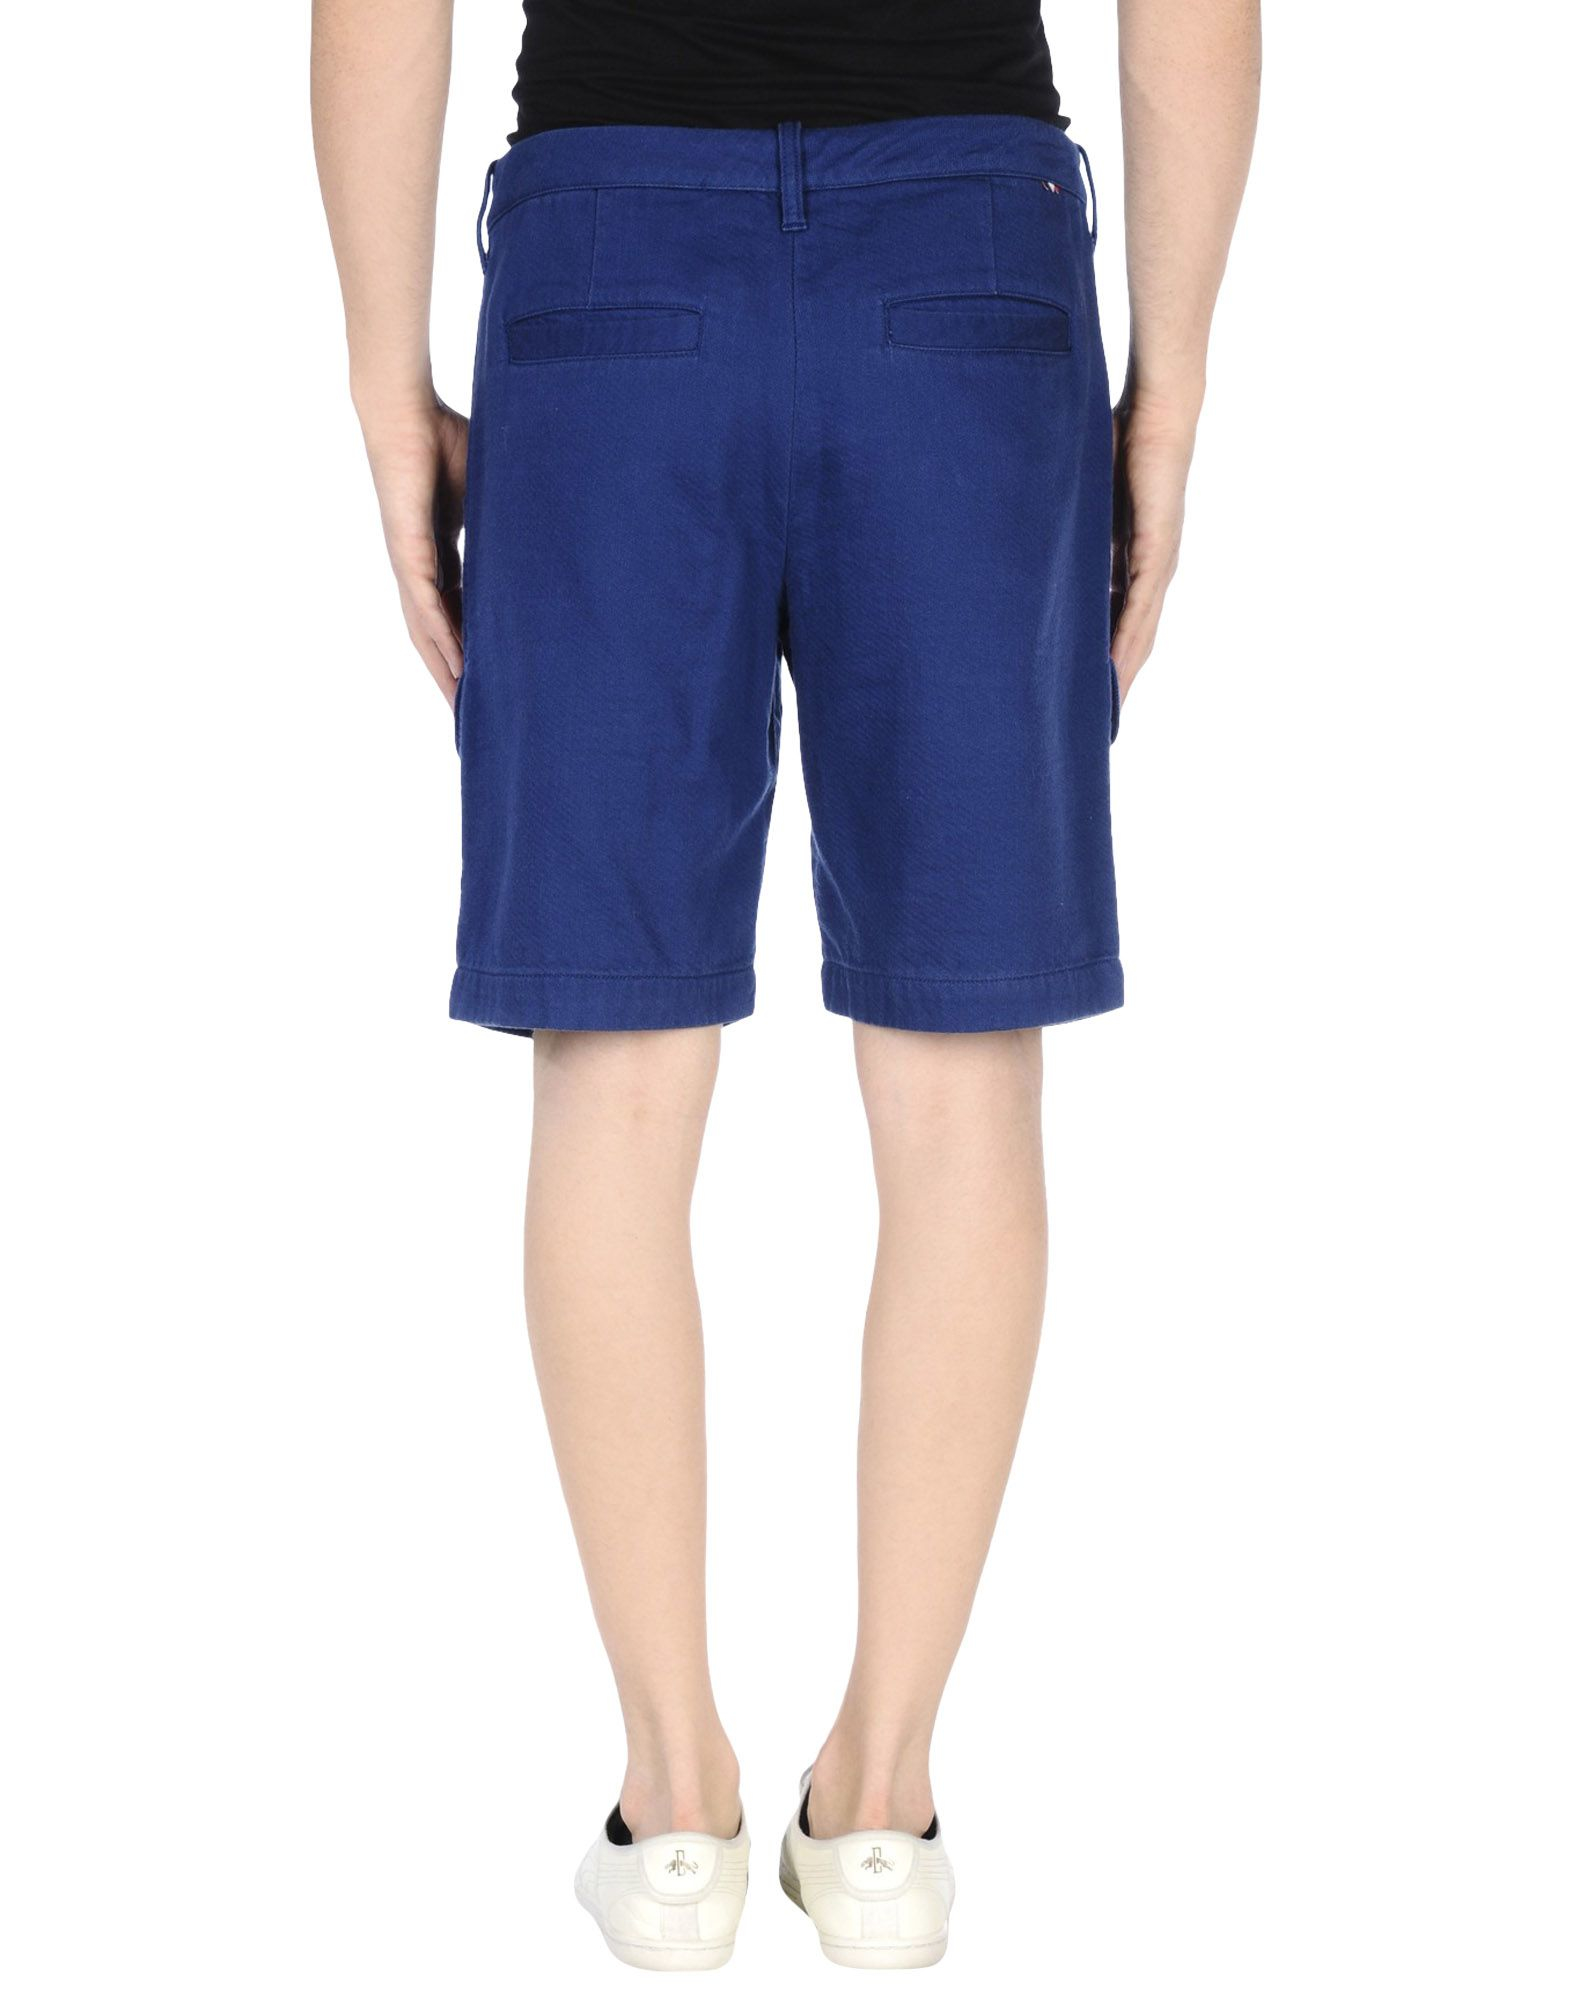 Lyst - Lacoste Bermuda Shorts in Blue for Men